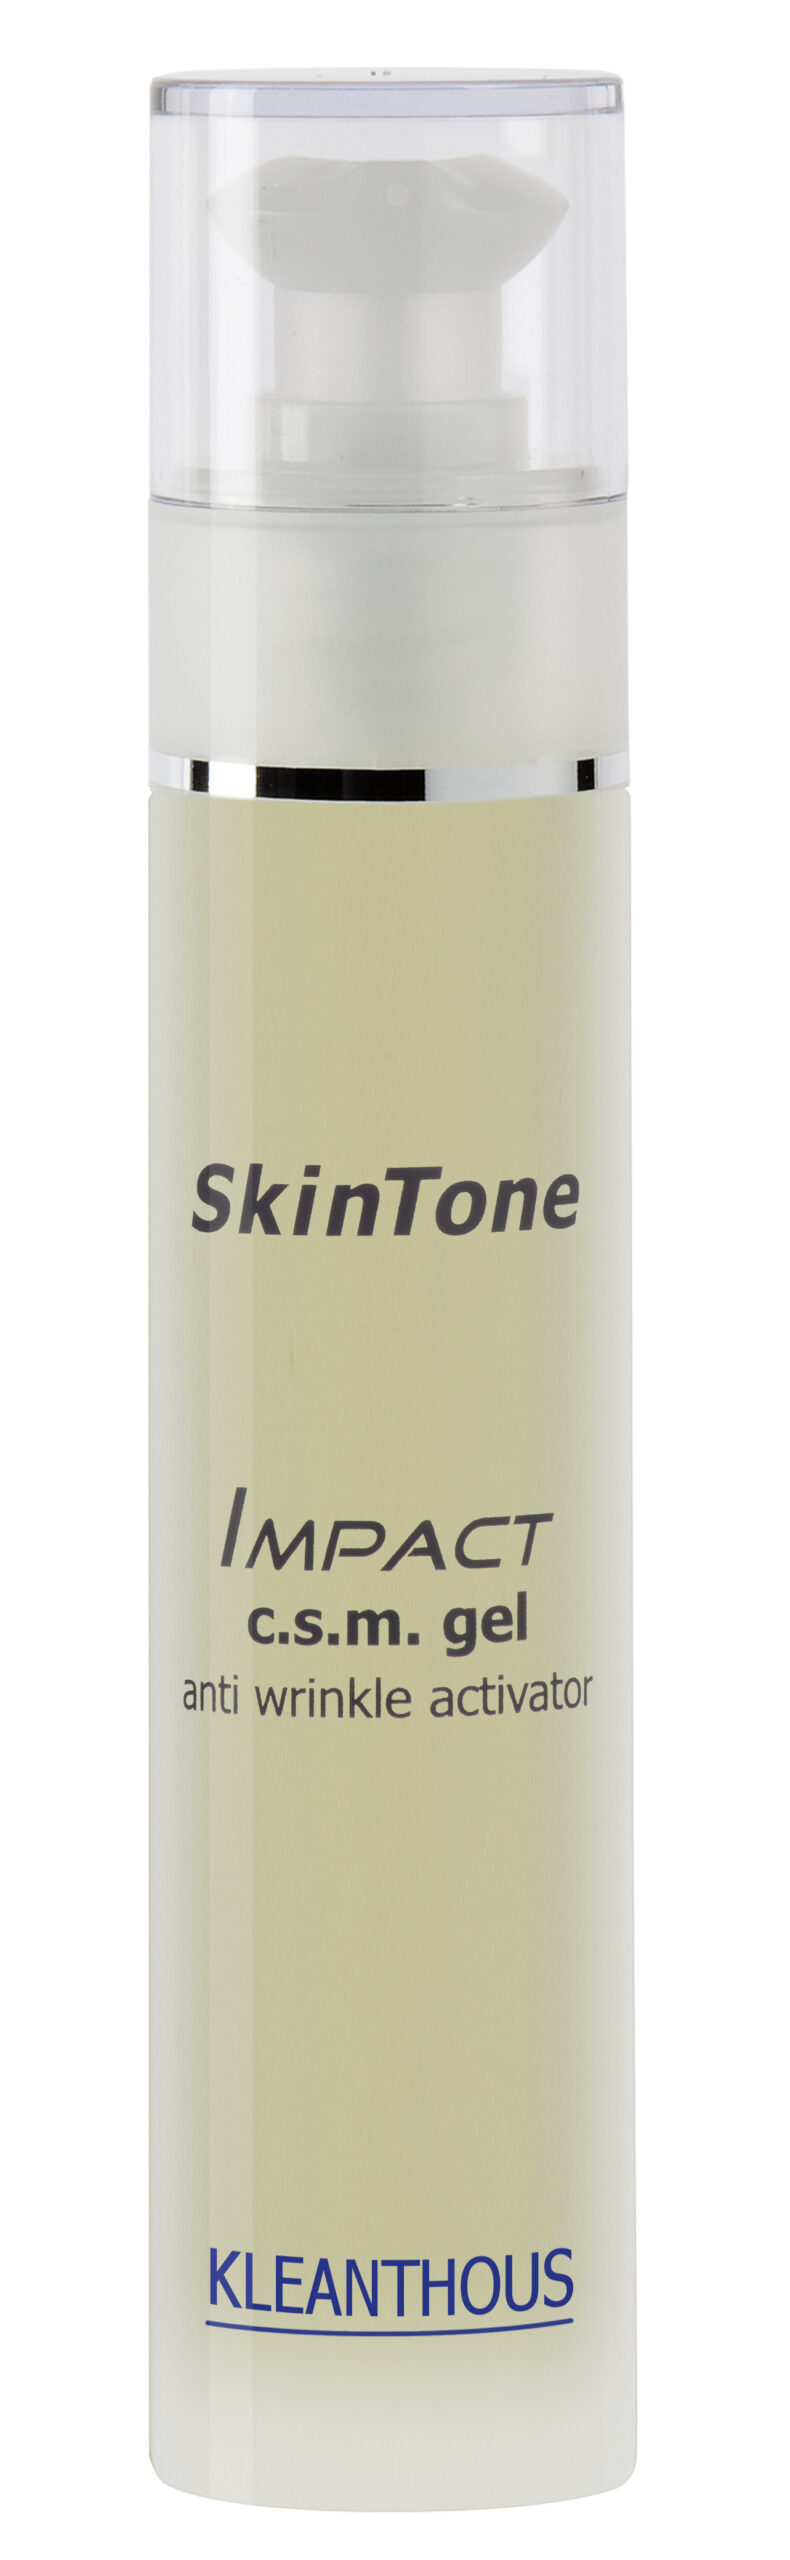 SkinTone IMPACT c.s.m. gel 50 ml